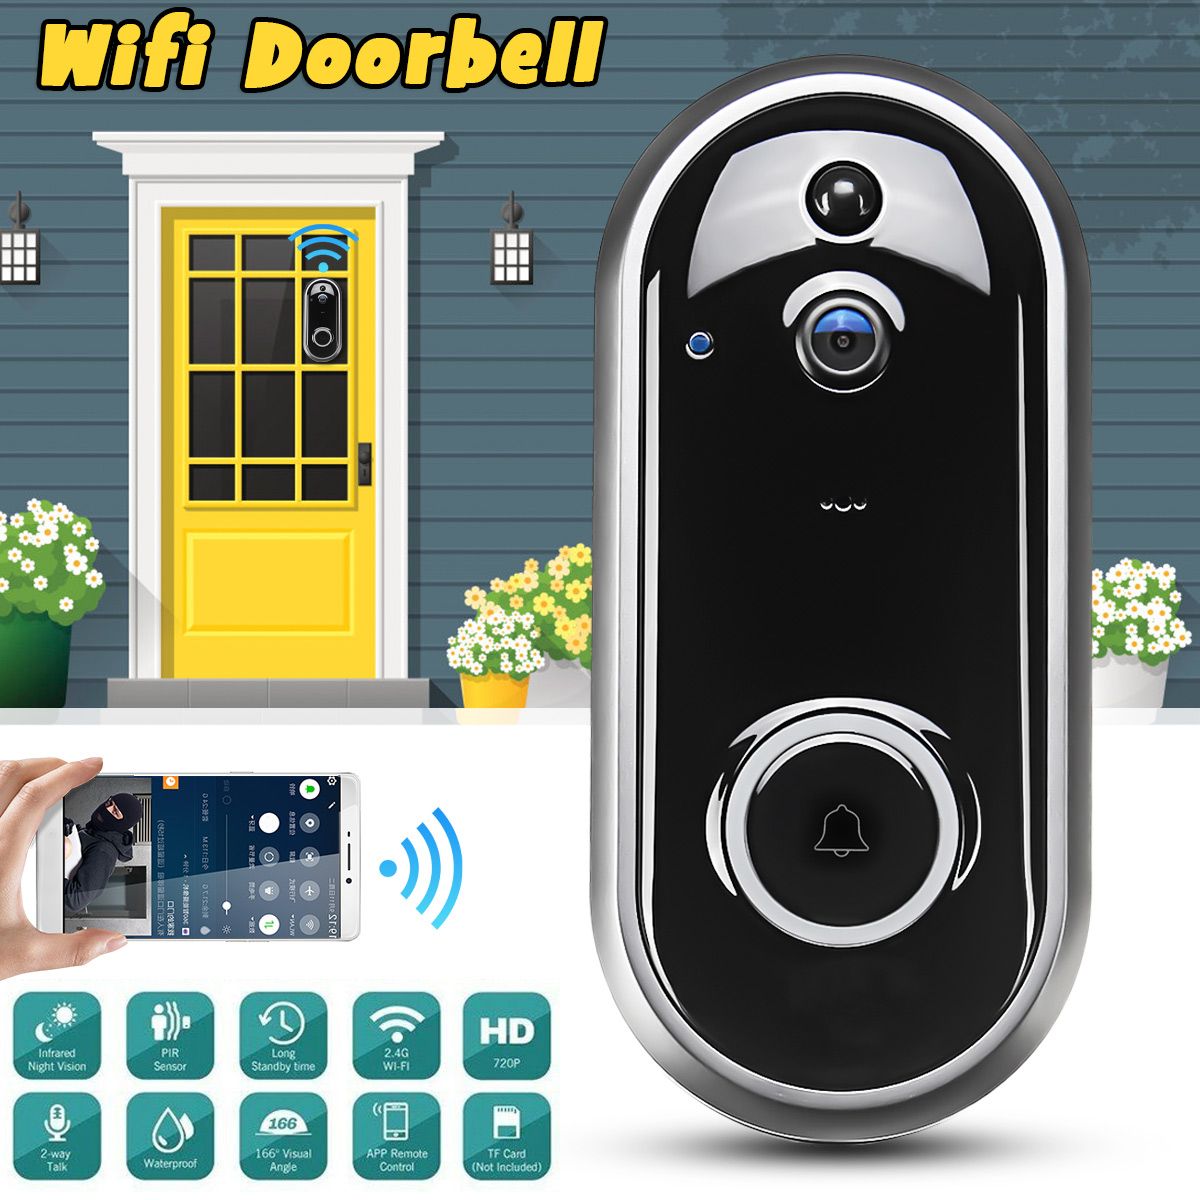 Video-Doorbell-Camera-Wireless-WiFi-Security-Phone-Ring-Door-Bell-Intercom-720P-1680633